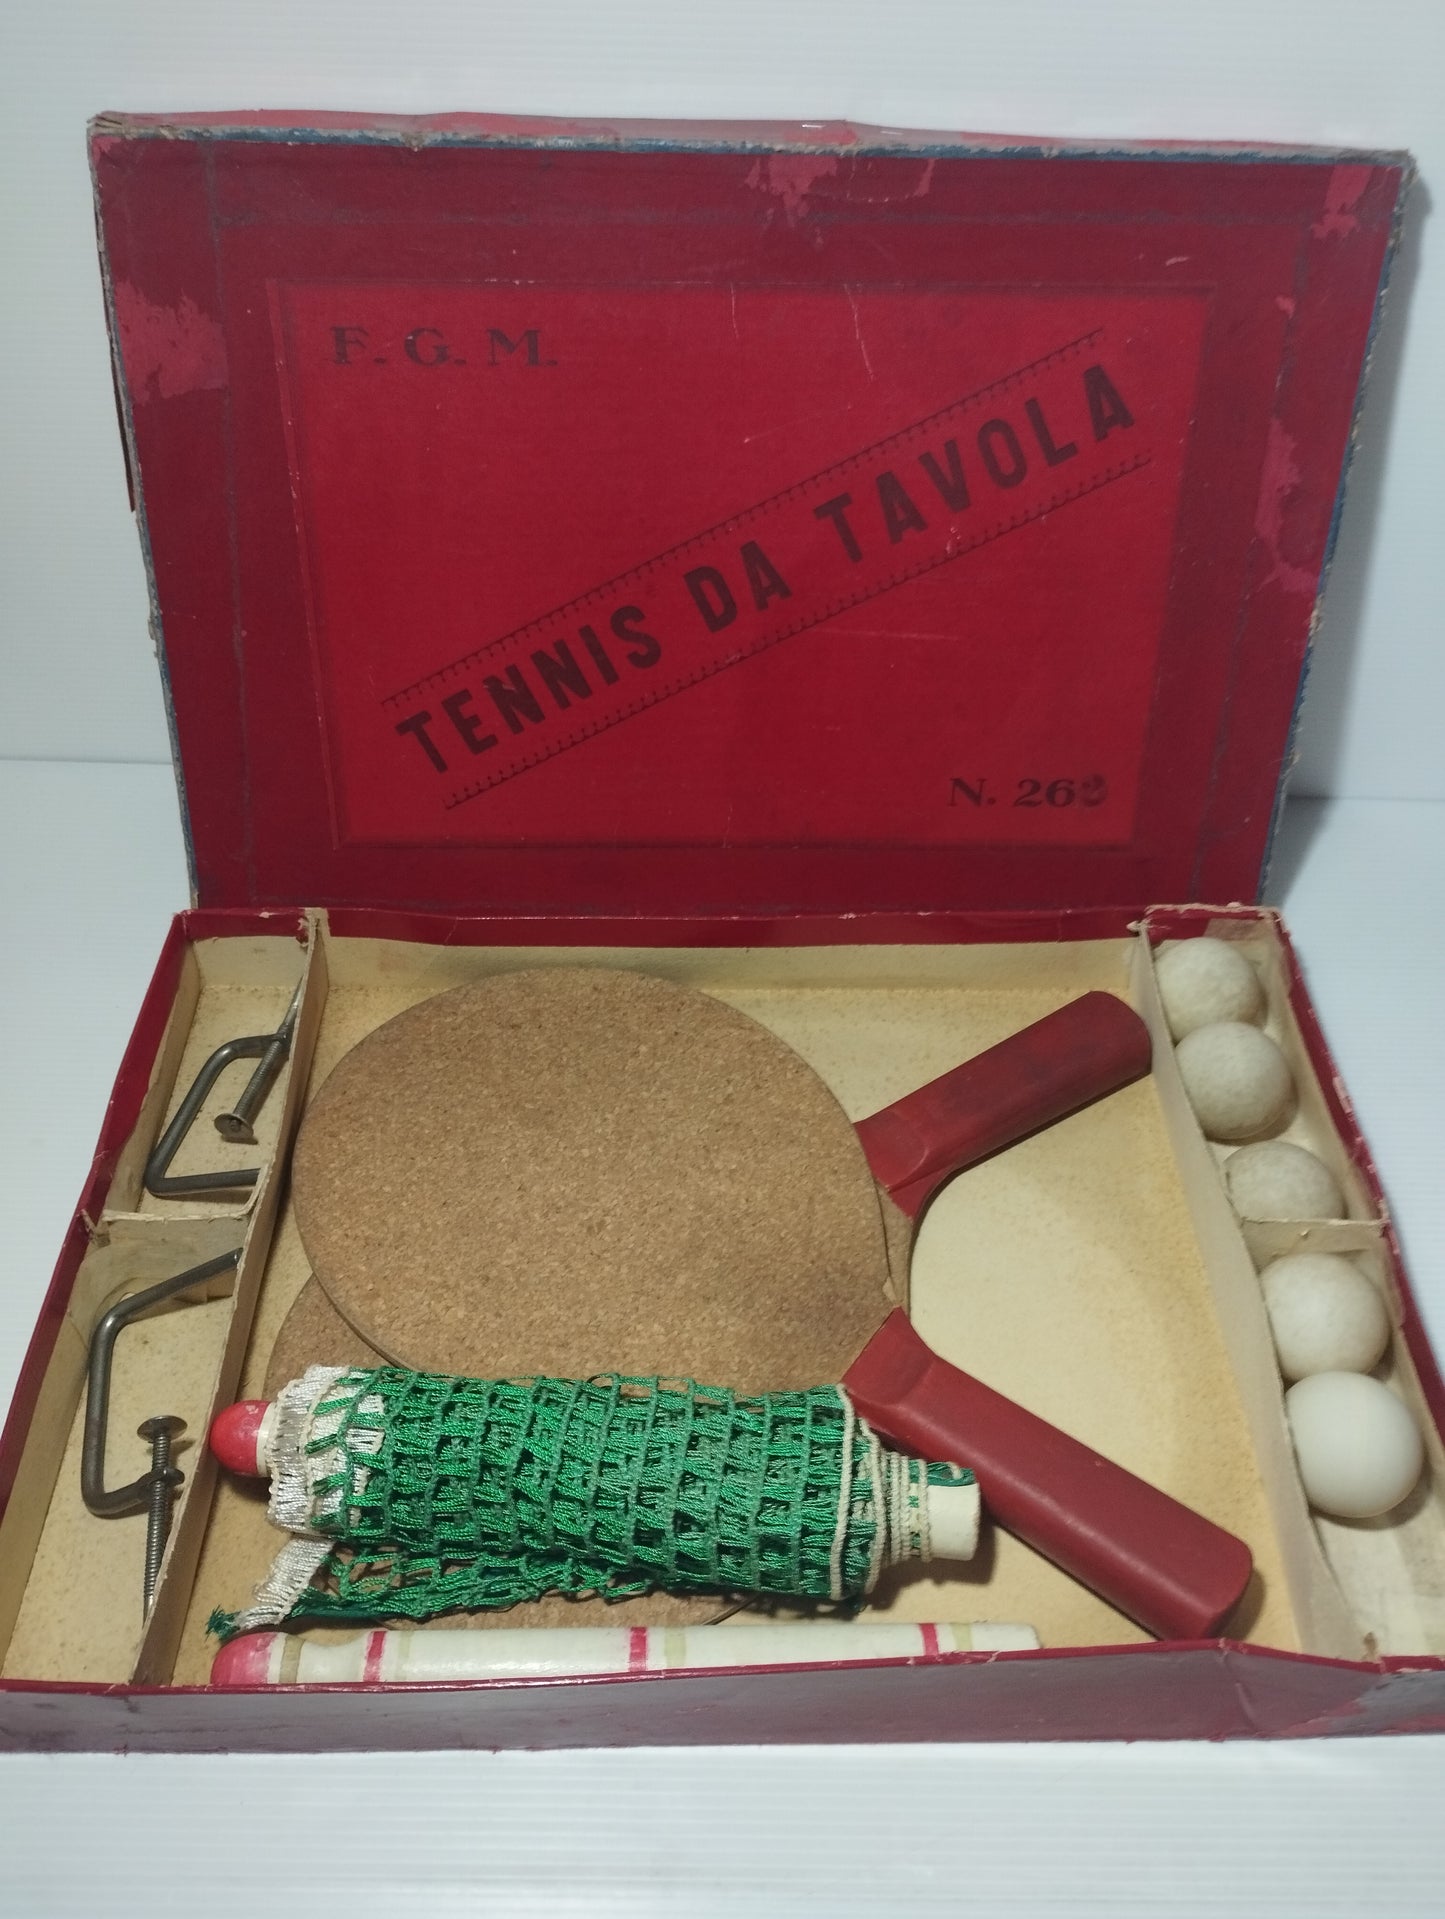 Antico Gioco Tennis Da Tavolo

Prodotto da F.G.M.